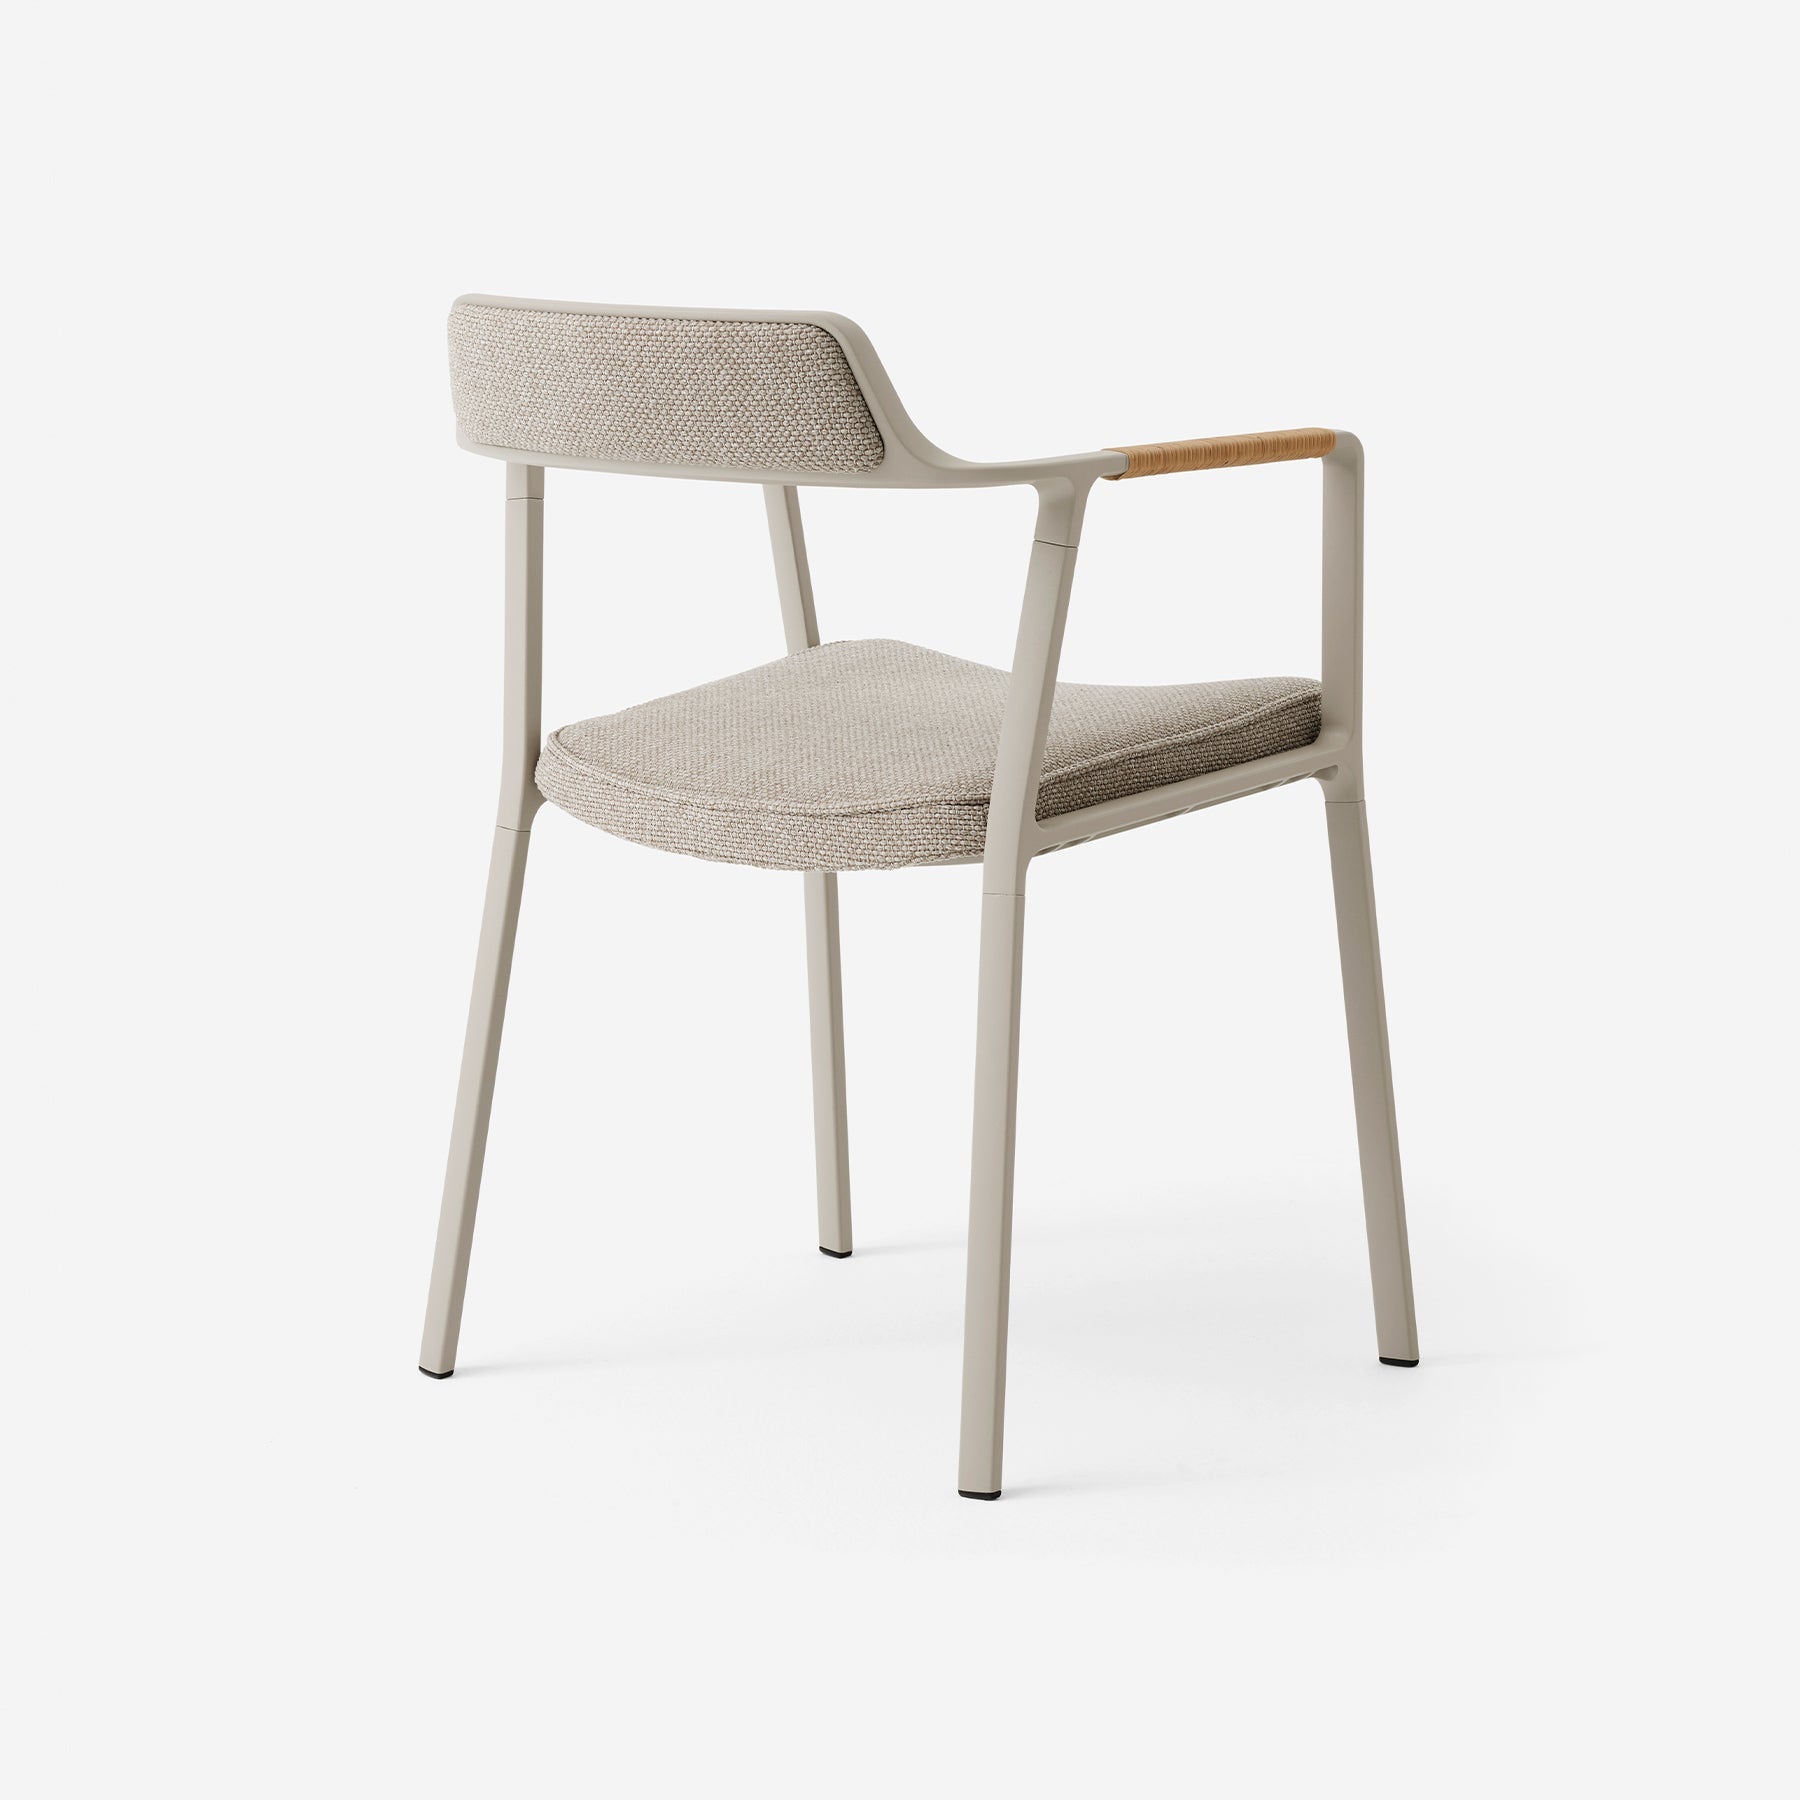 VIPP711 Open-Air chair - Moleta Munro Limited